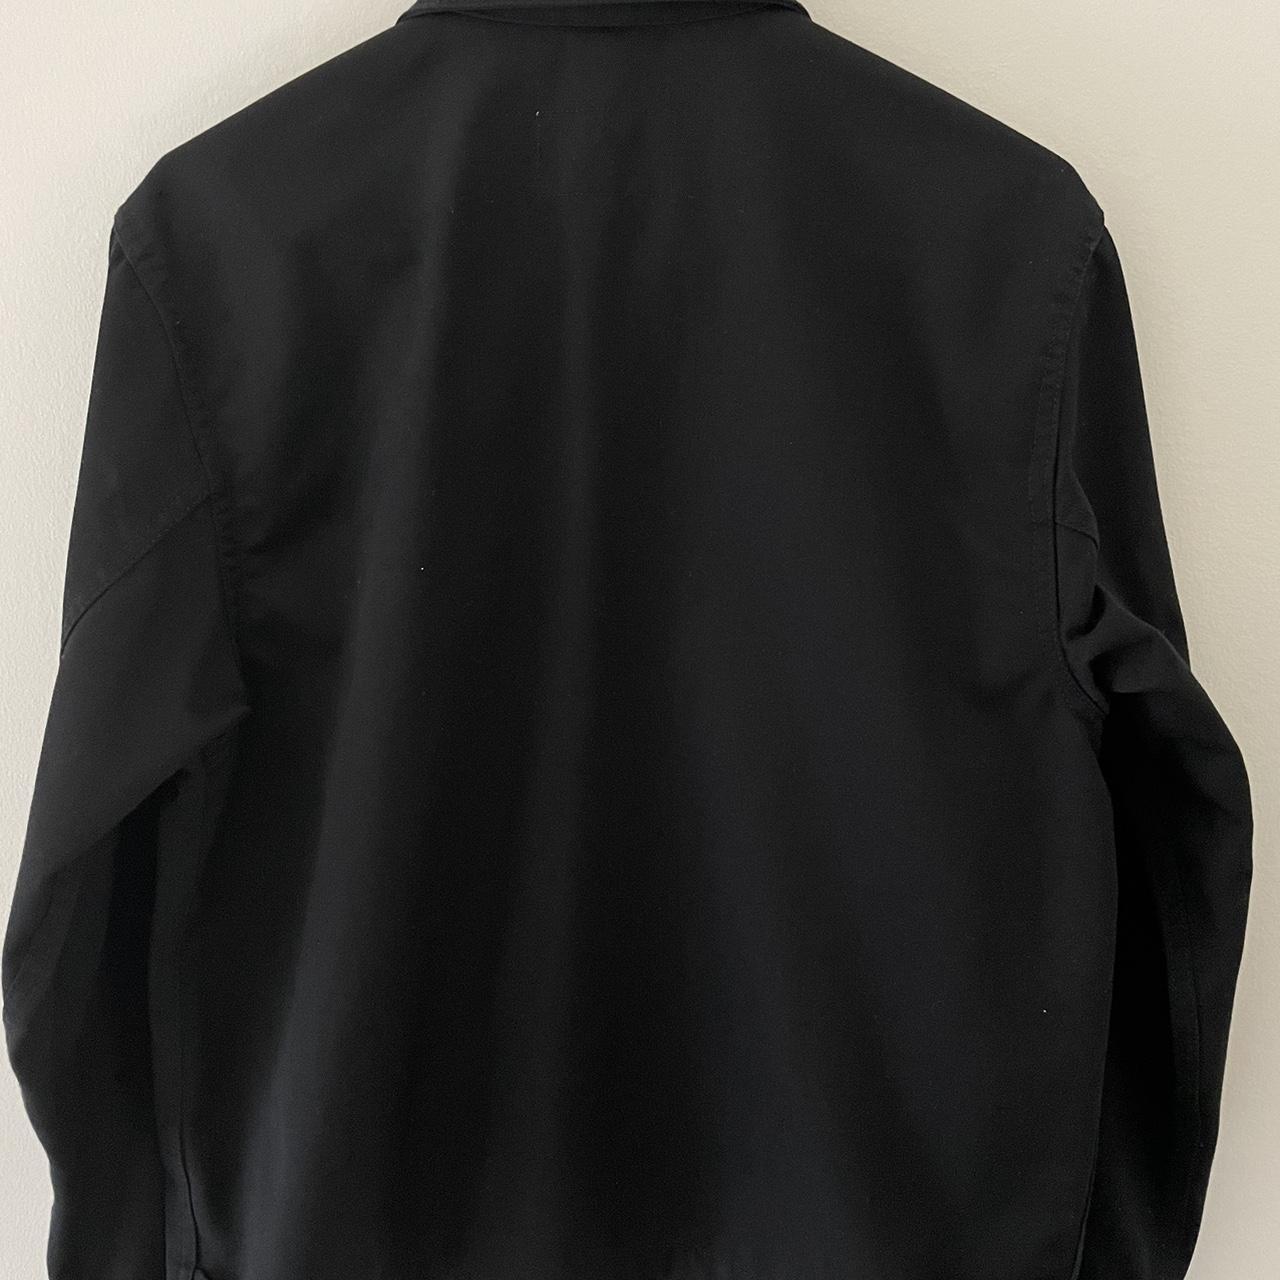 Carhartt WIP Men's Jacket | Depop